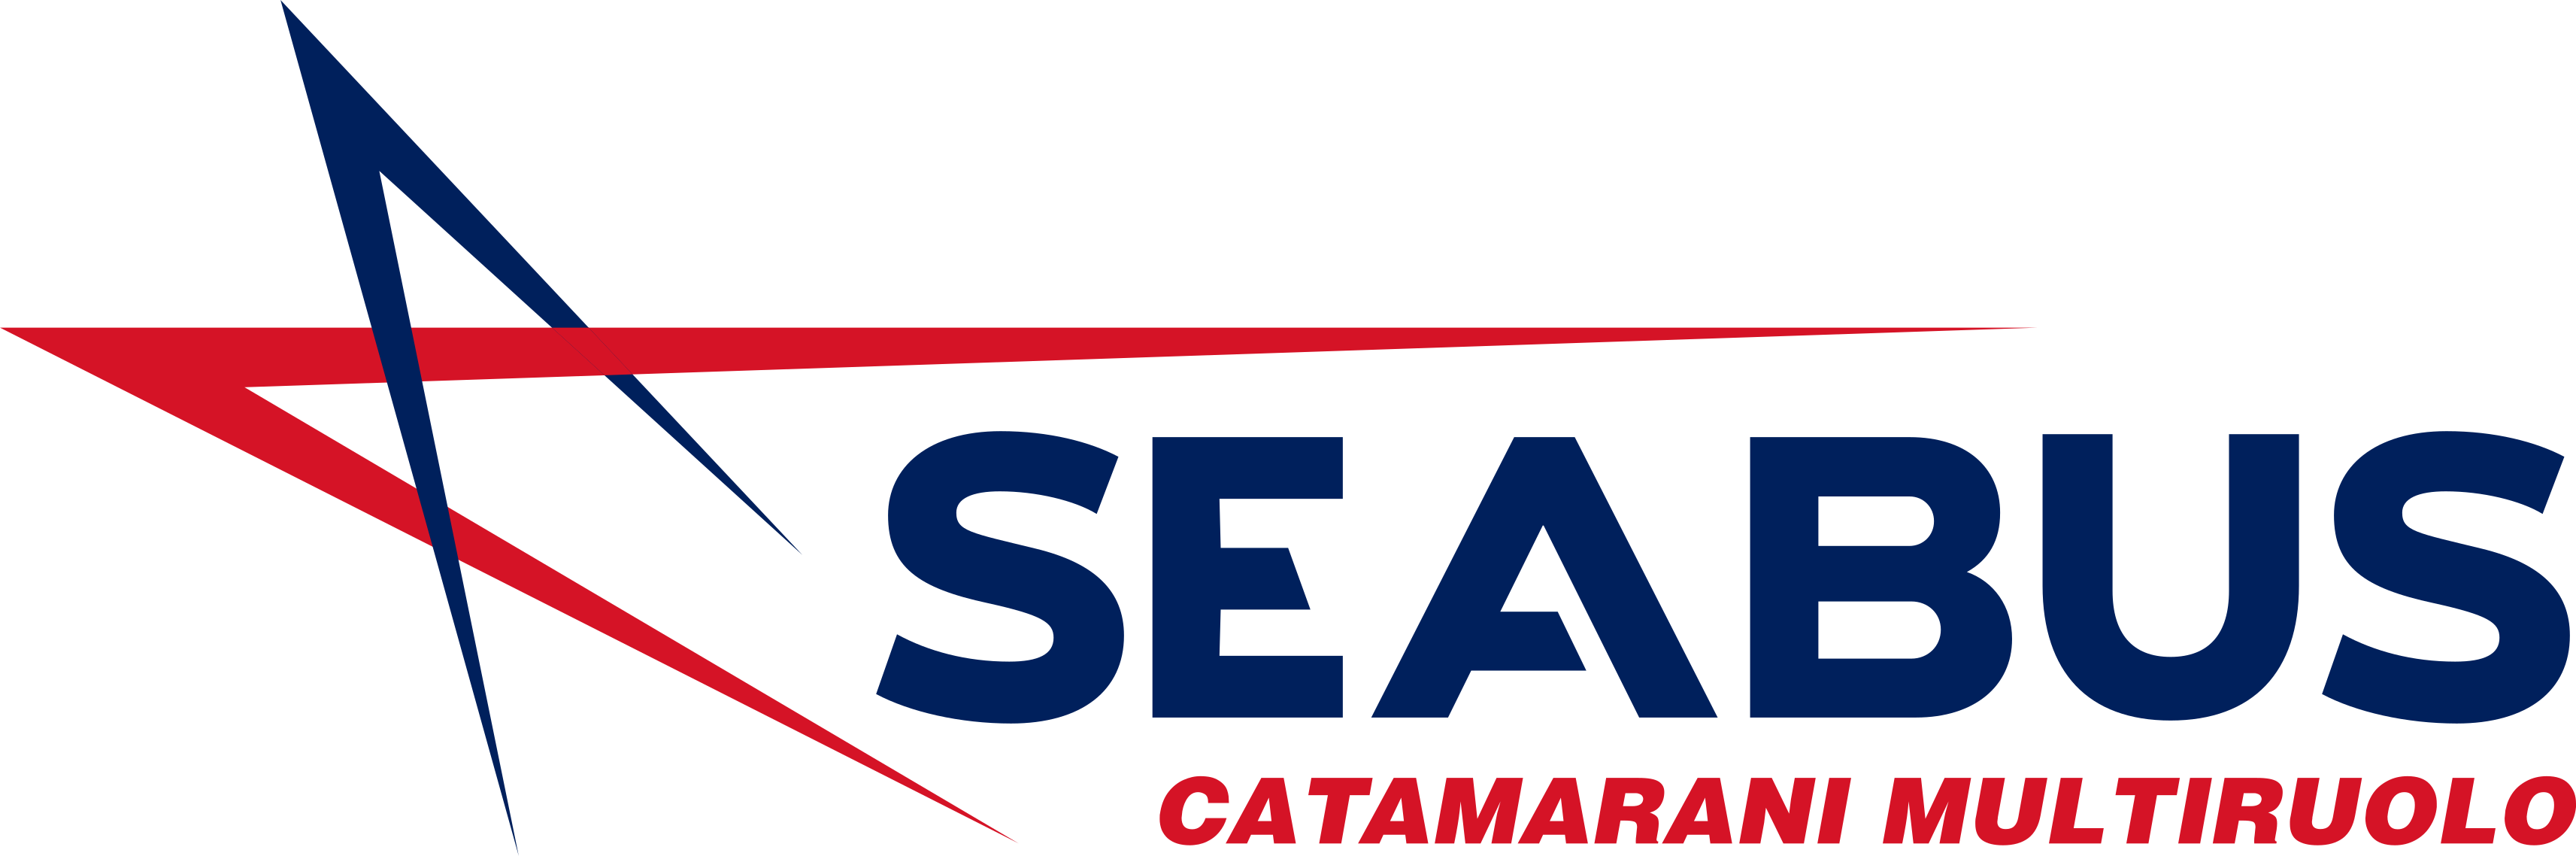 Logo SEABUS commercial catamarans